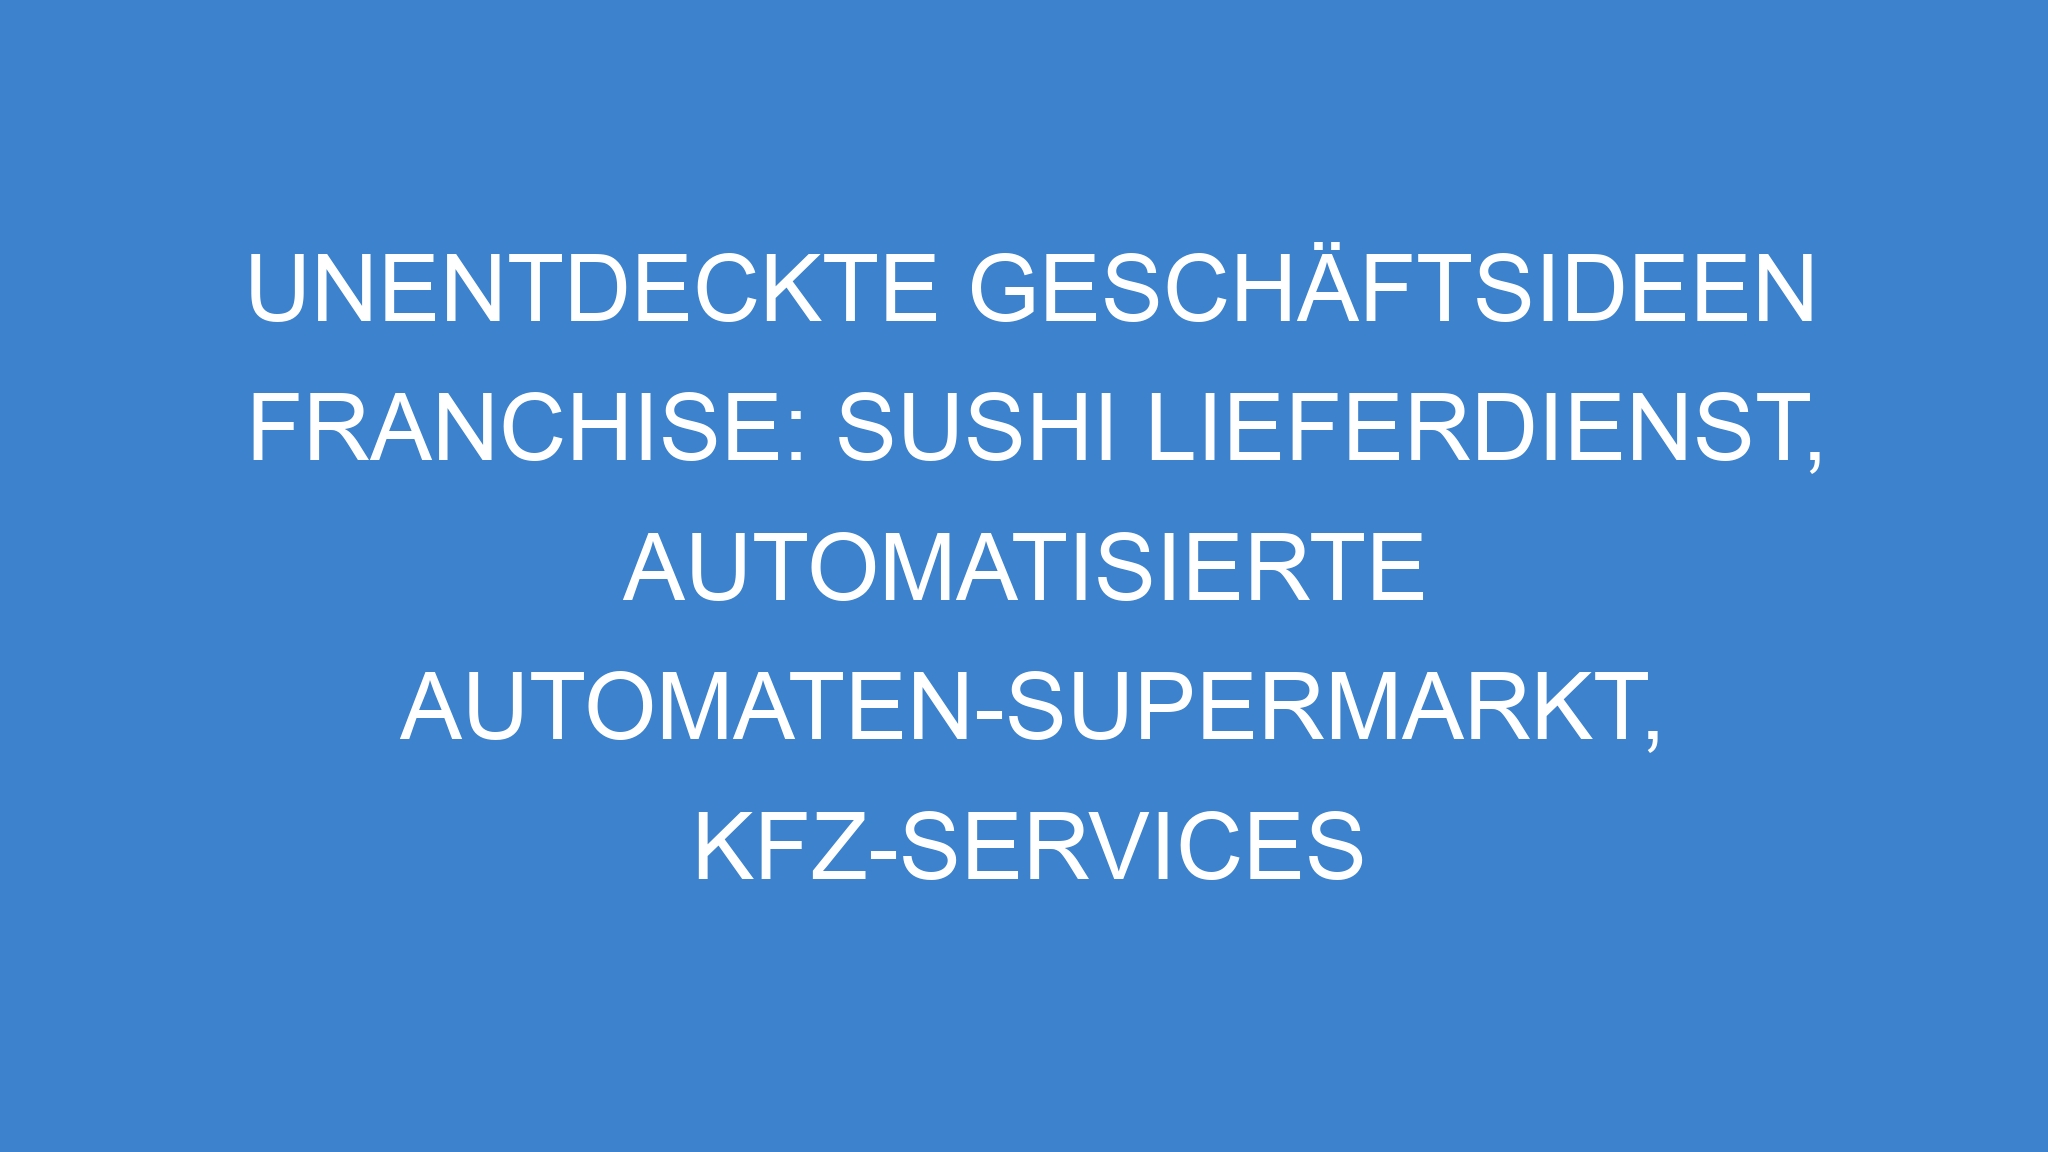 Unentdeckte Geschäftsideen Franchise: Sushi Lieferdienst, Automatisierte Automaten-Supermarkt, KFZ-Services